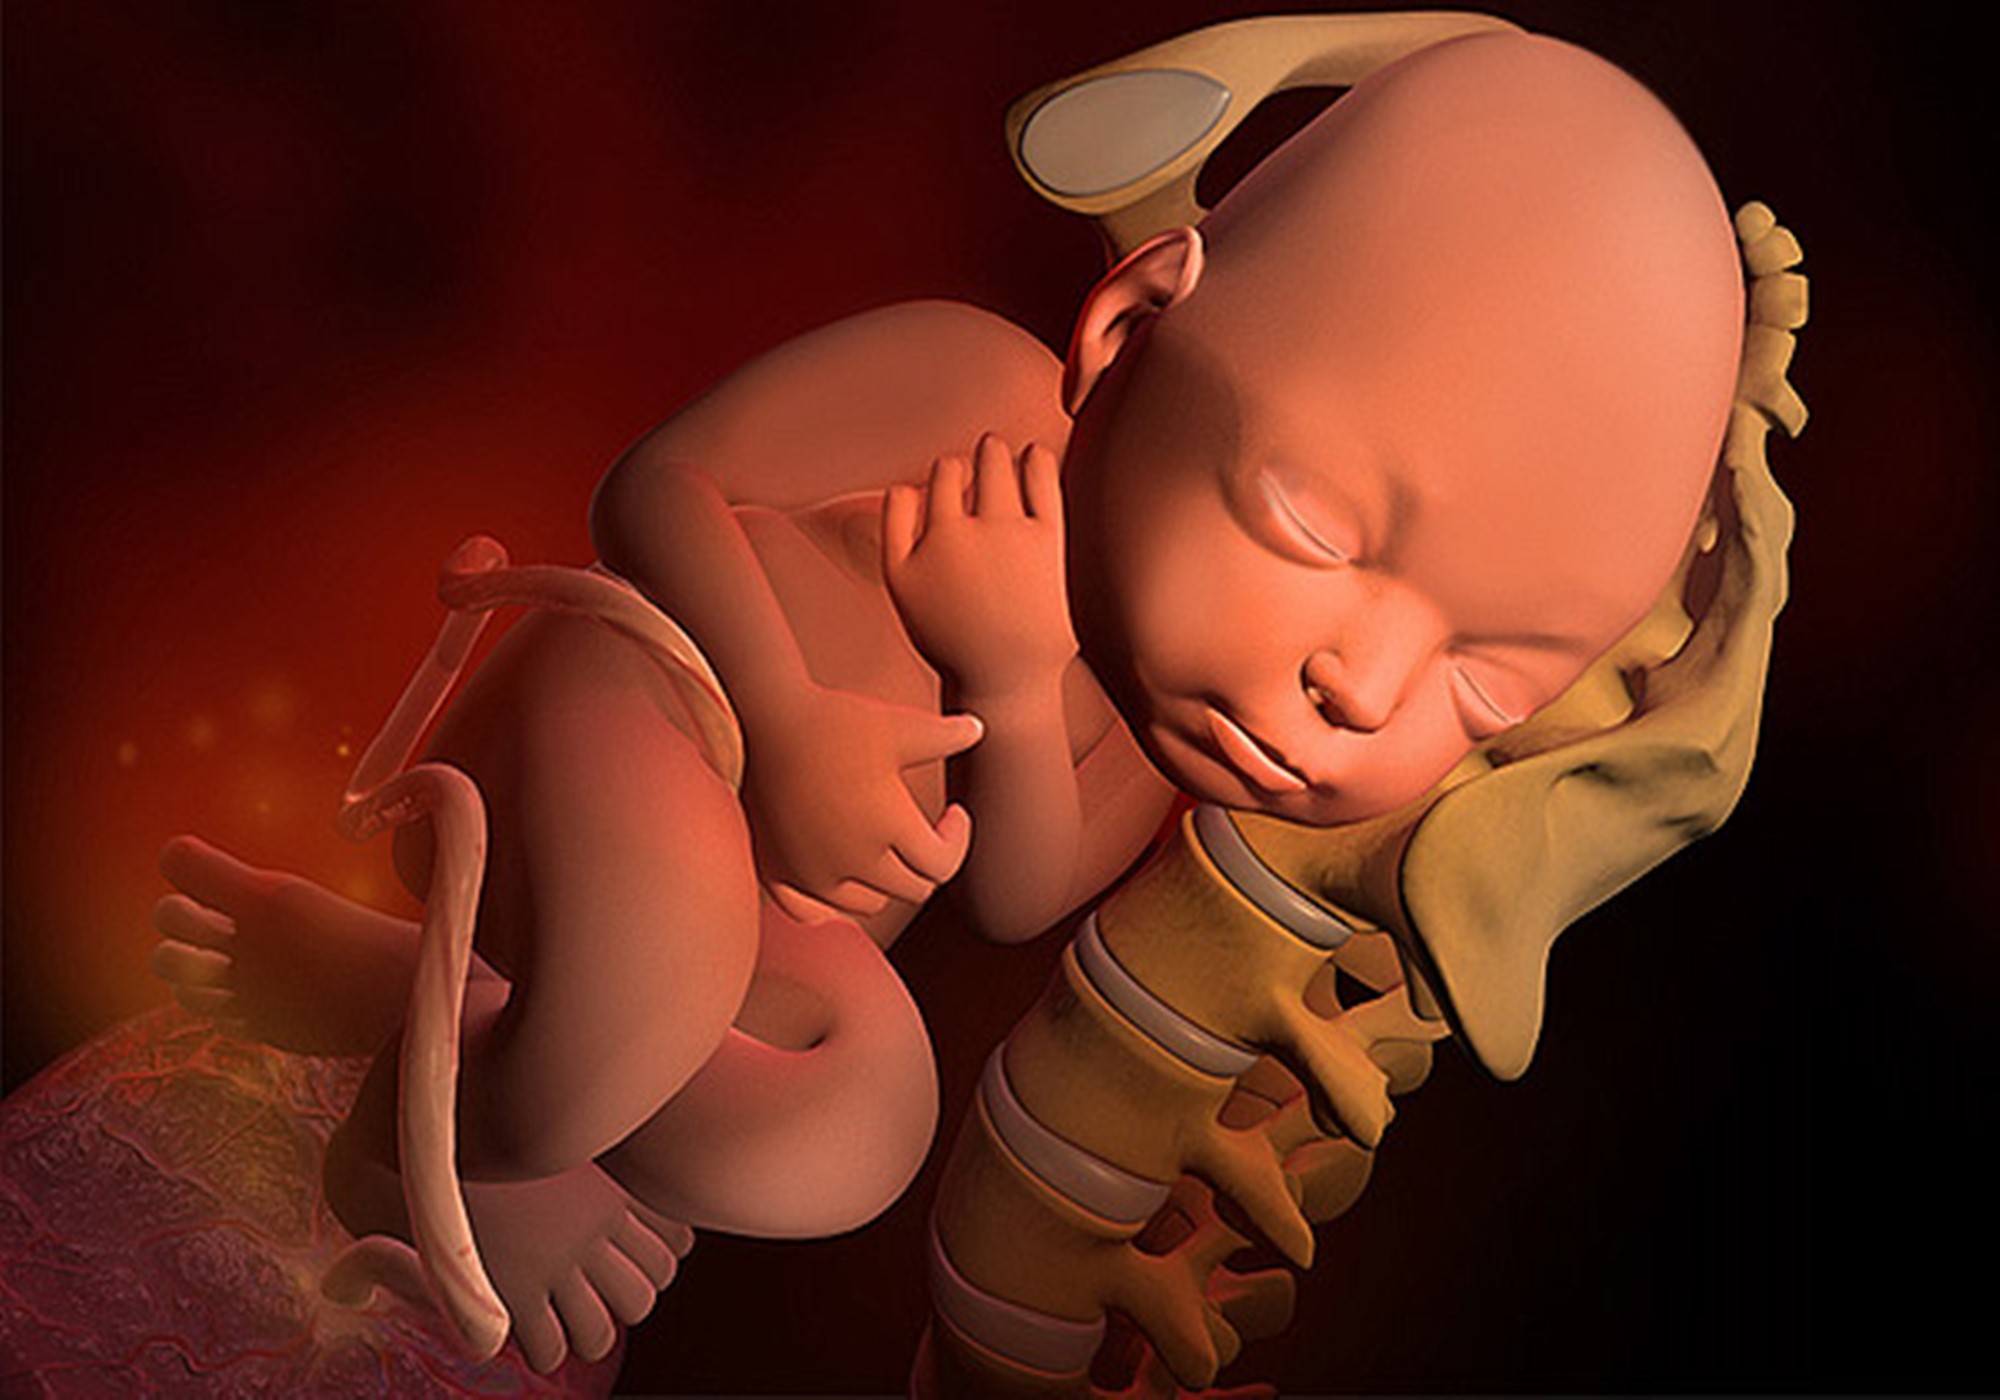 一,37周出生的娃并发症的几率会更高 早期足月妊娠的胎儿出生相比